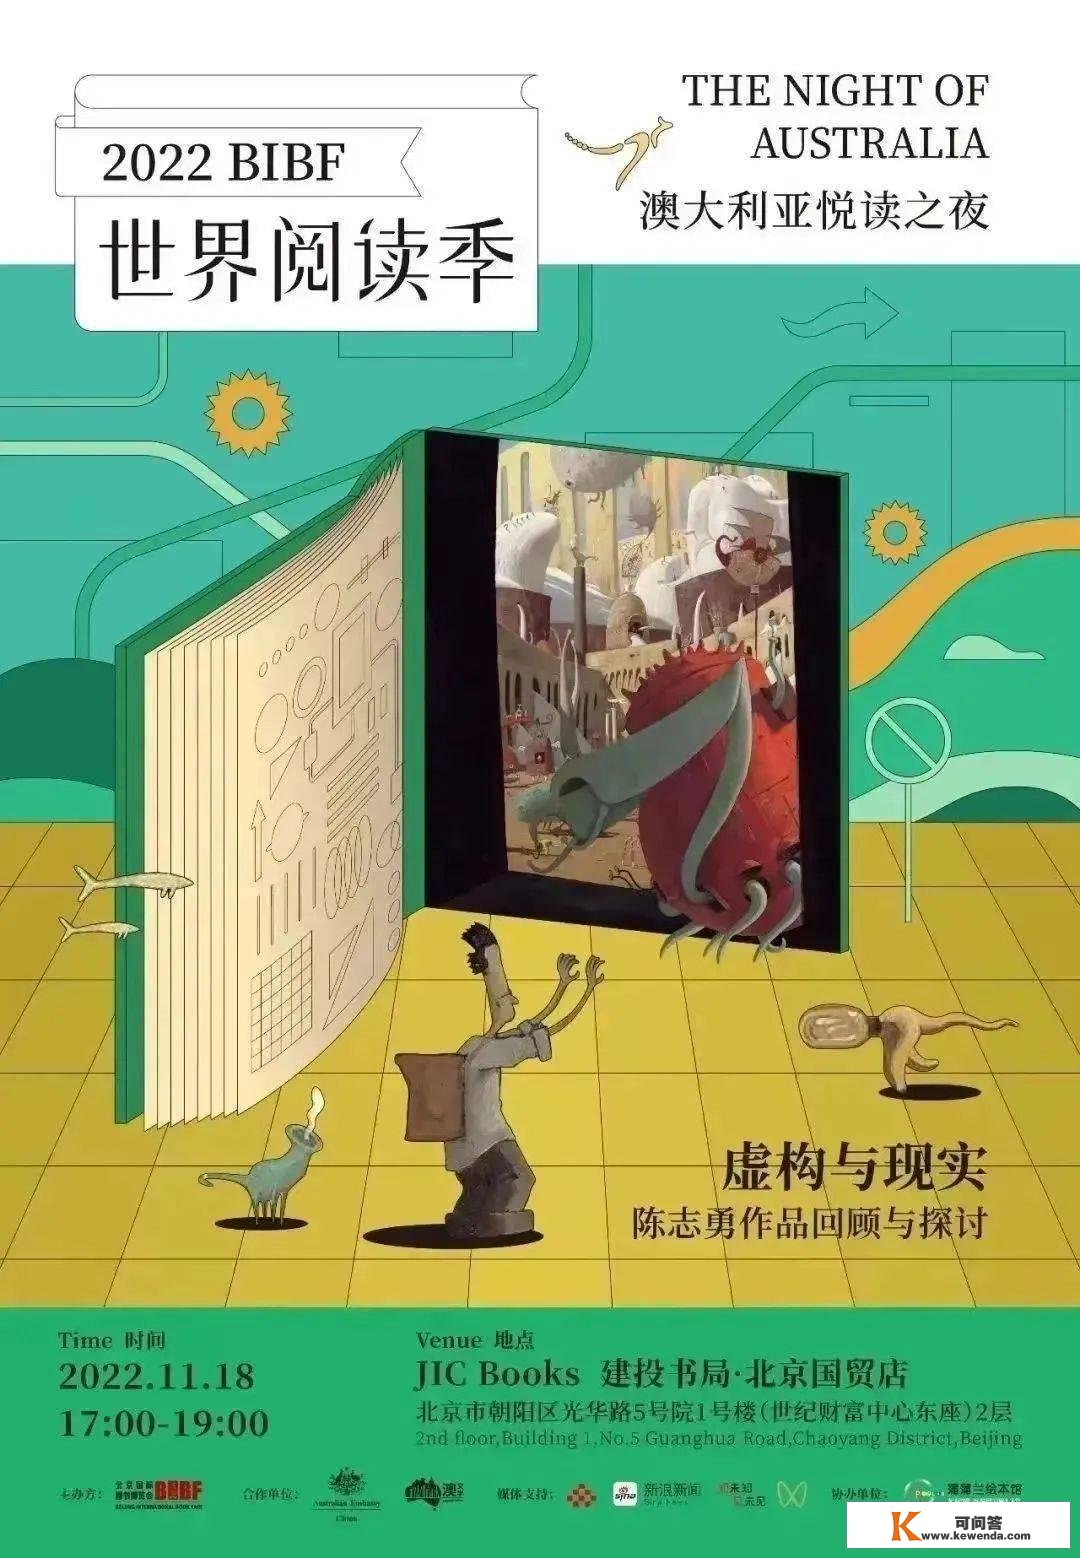 世界级插画巨匠——陈志勇，初次和中国读者深度交换！就在今晚！